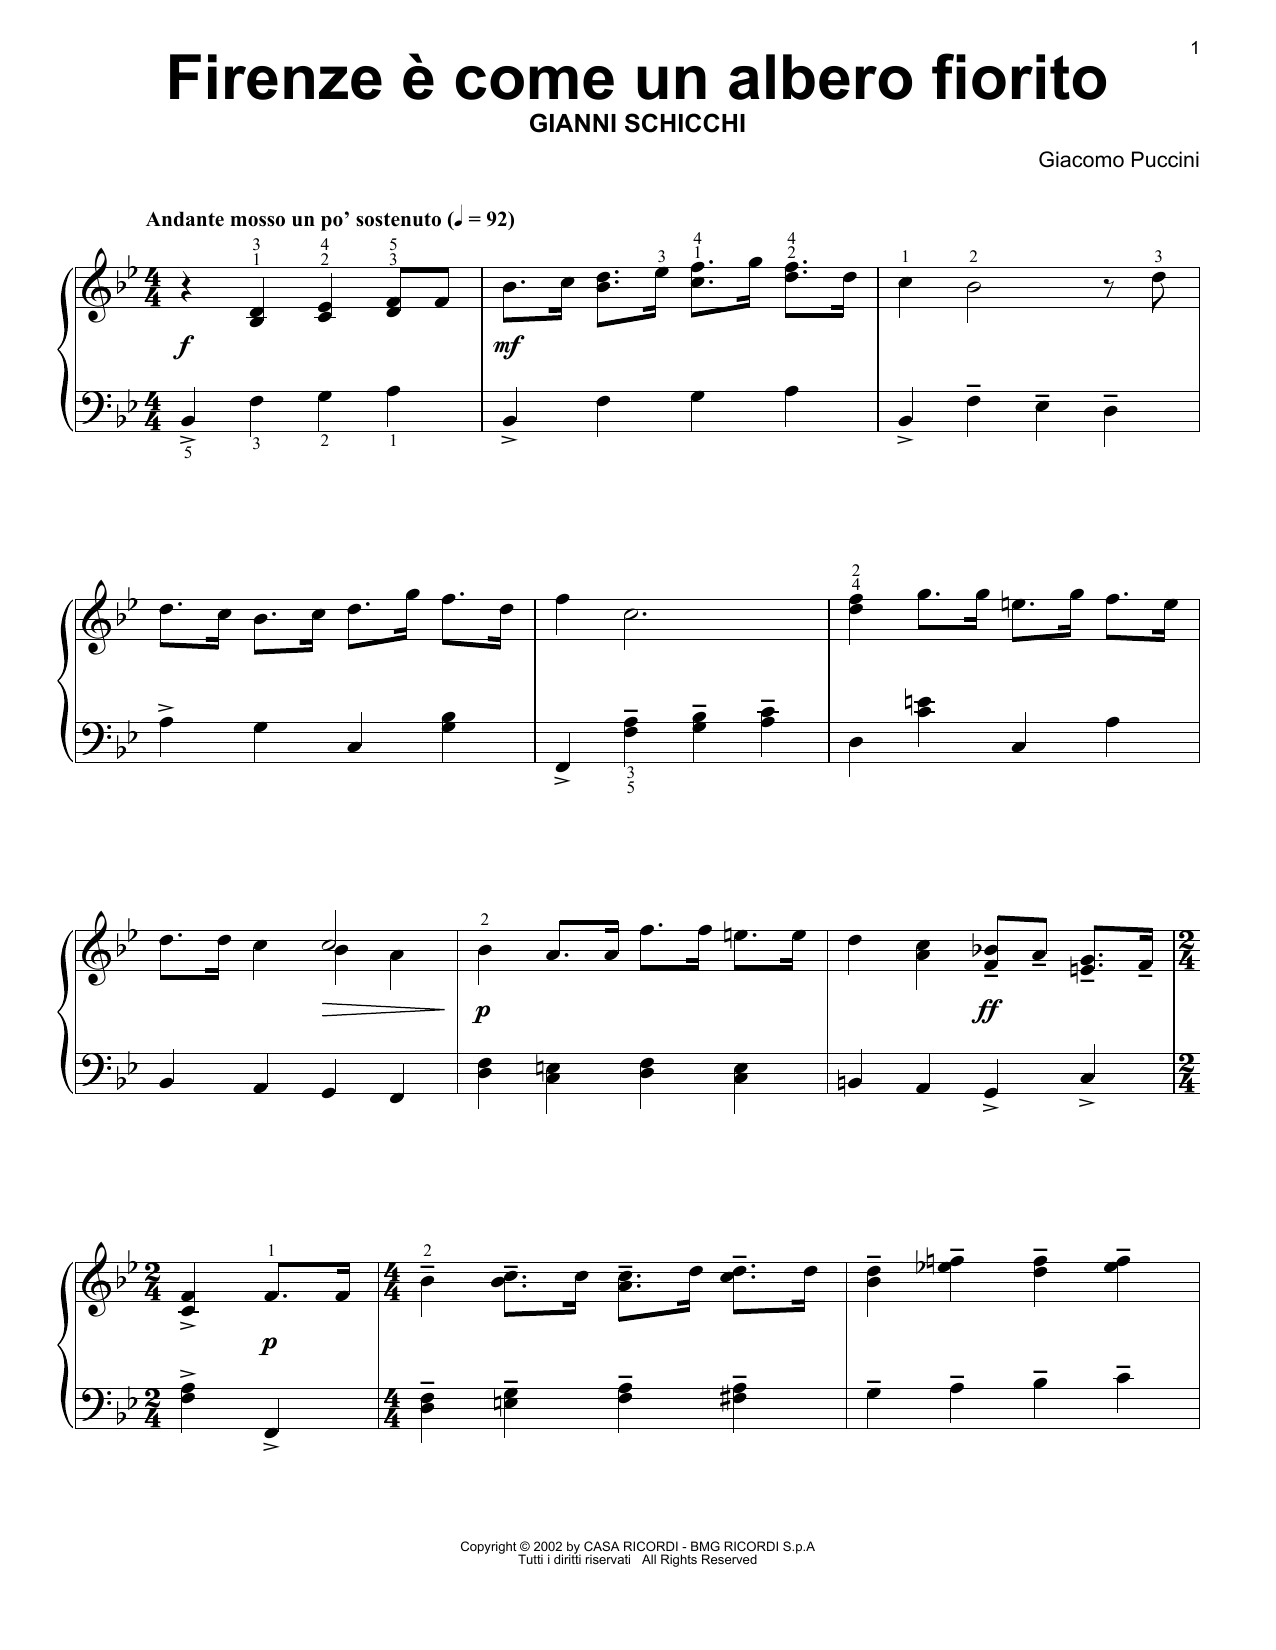 Giacomo Puccini Rinuccio's Aria (Firenze E Come Un Alberto Fiorito) Sheet Music Notes & Chords for Piano Solo - Download or Print PDF